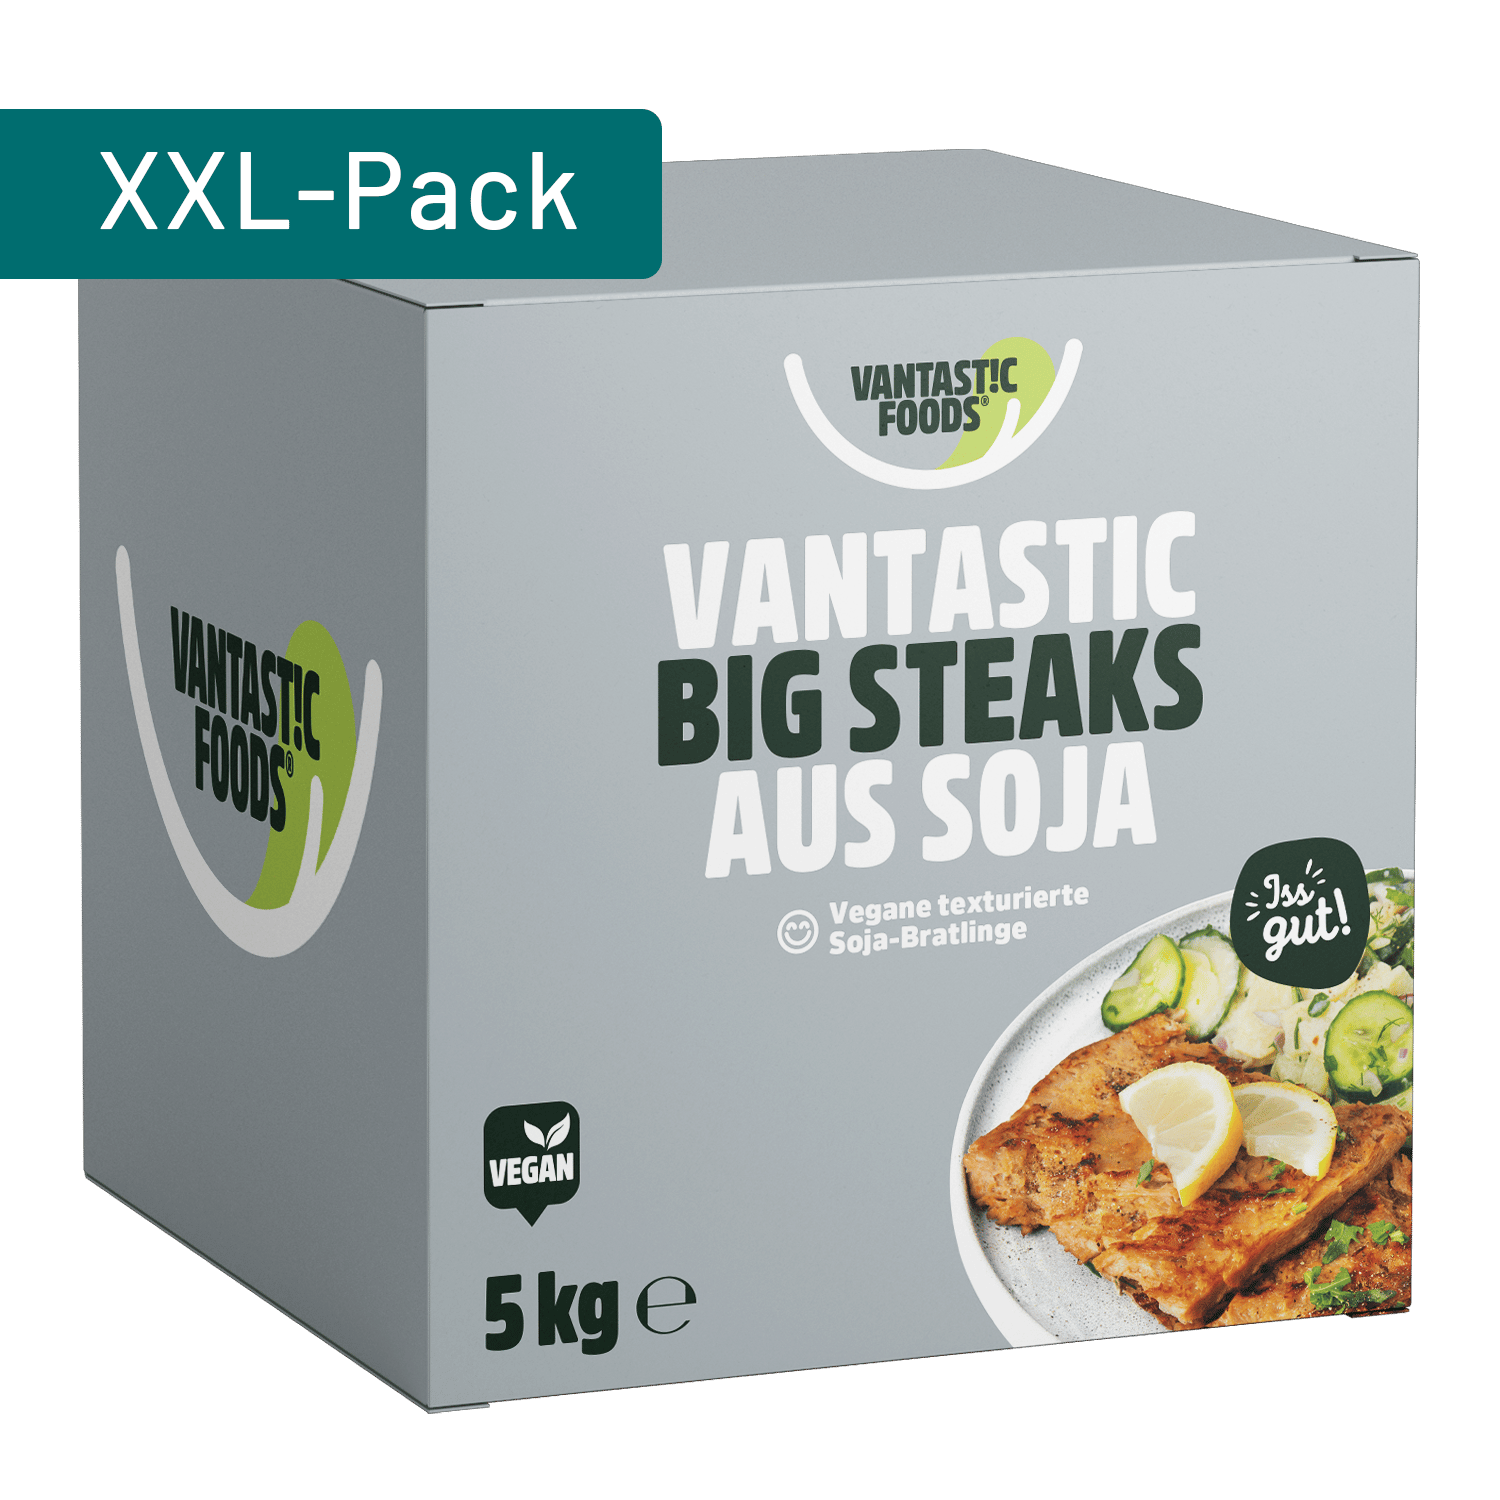 Vantastic Big Steaks aus Soja, 5kg